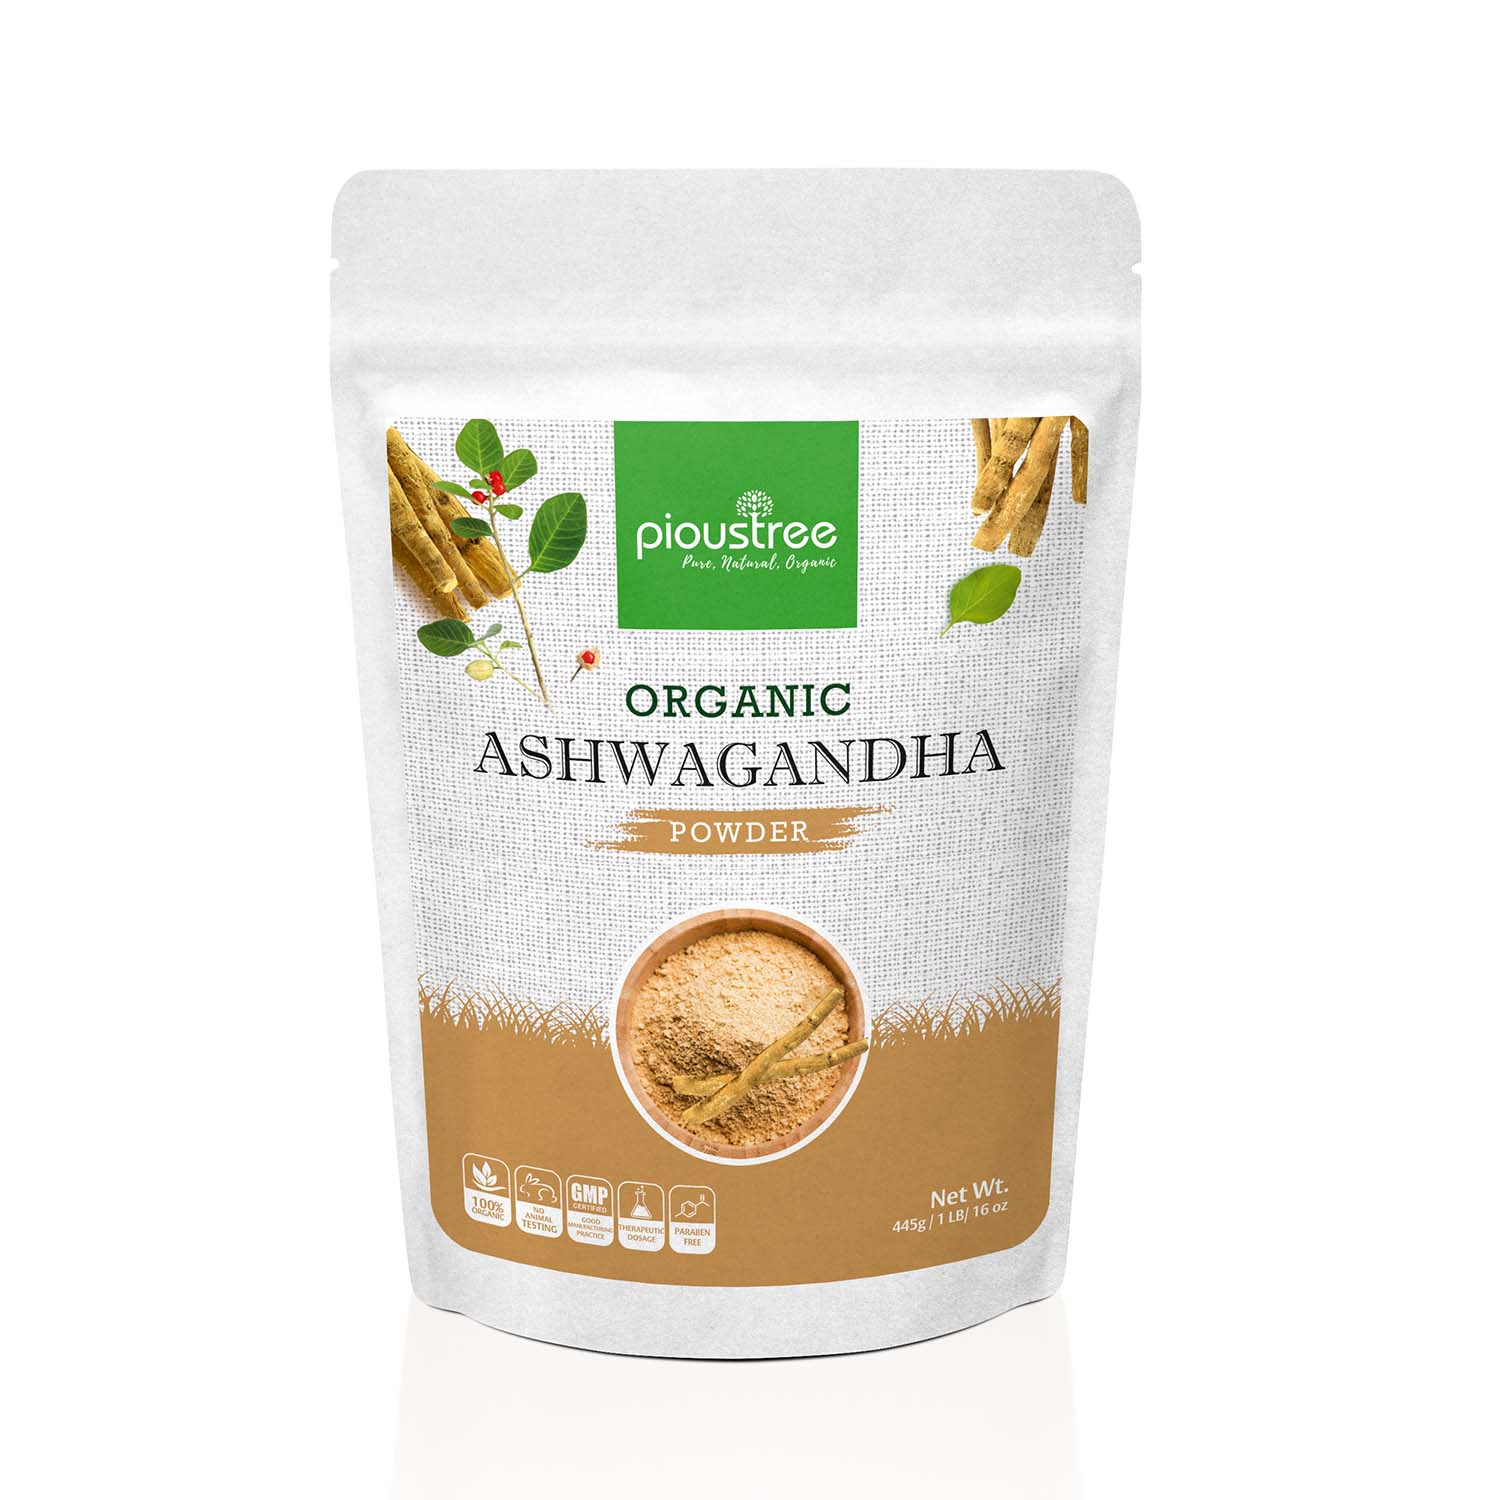 how to use powdered ashwagandha